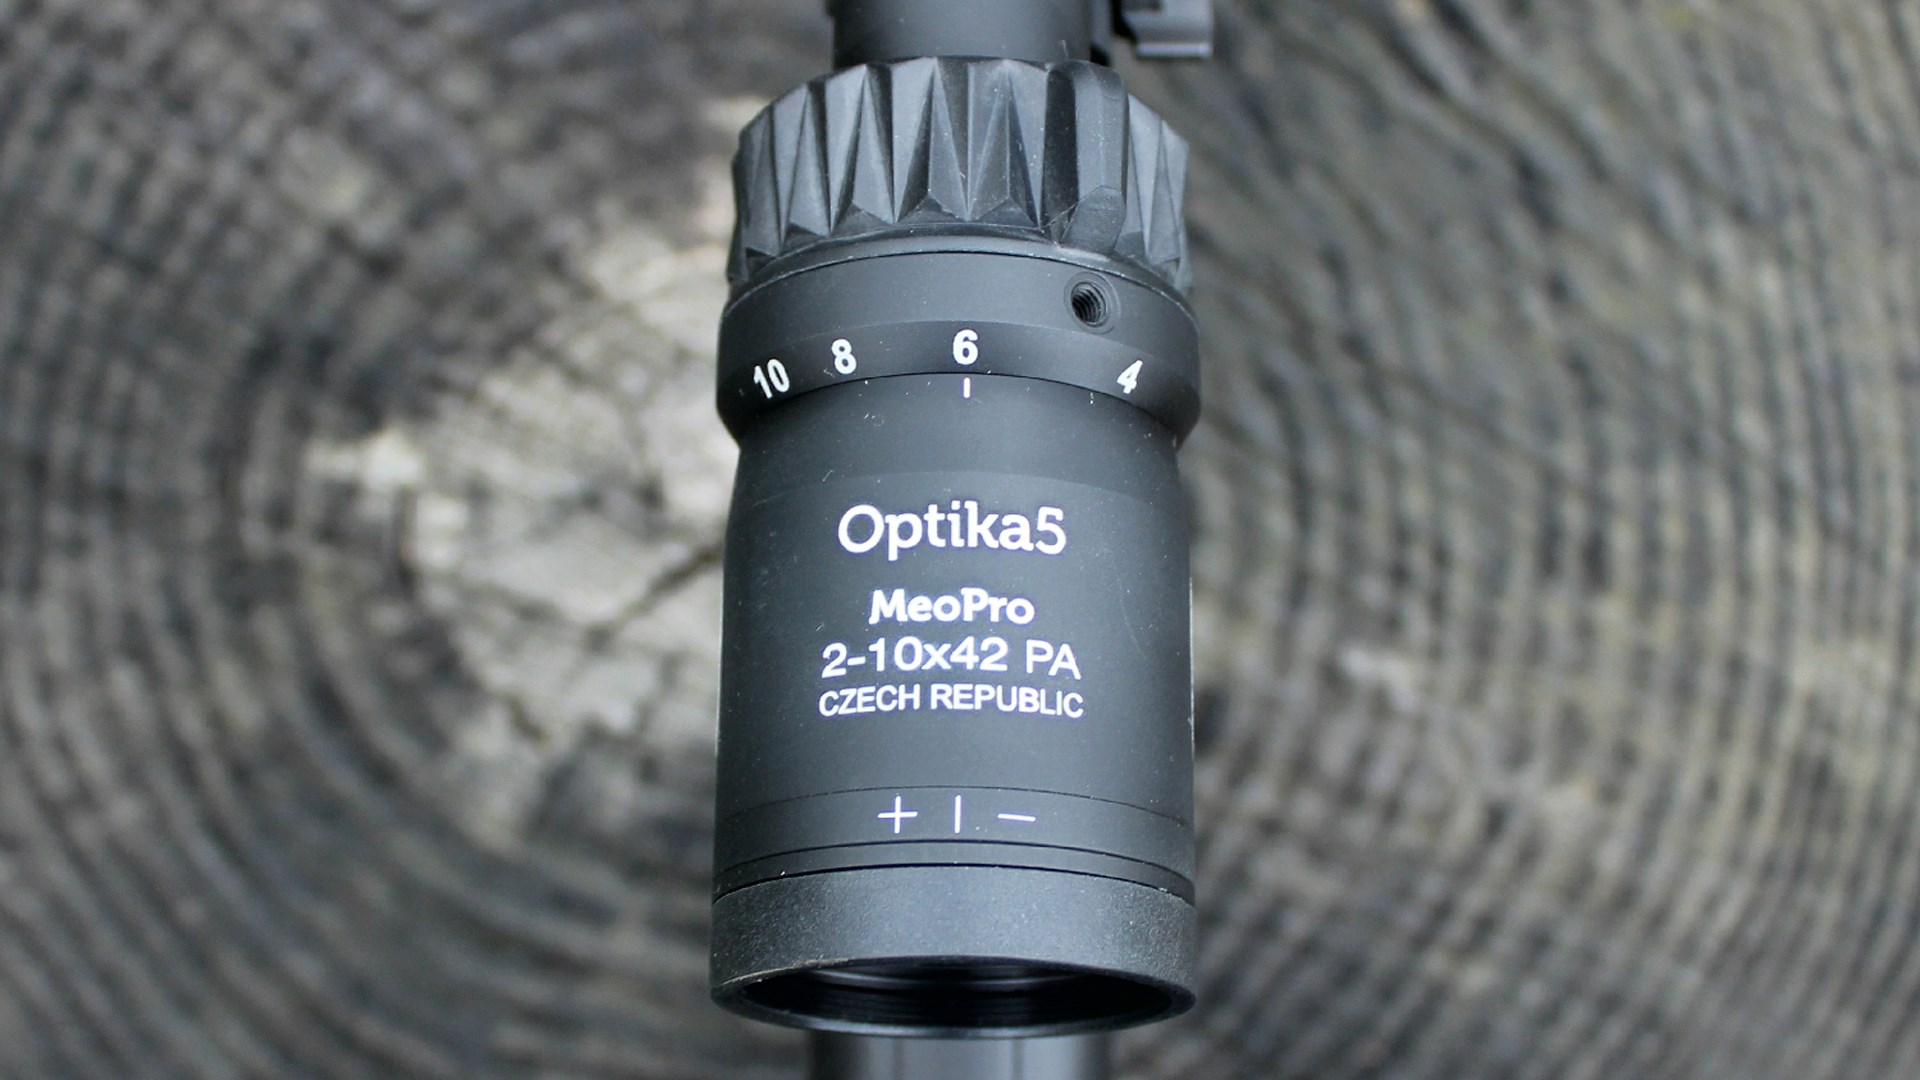 Meopta Optika5 riflescope oculuar magnification ring closeup